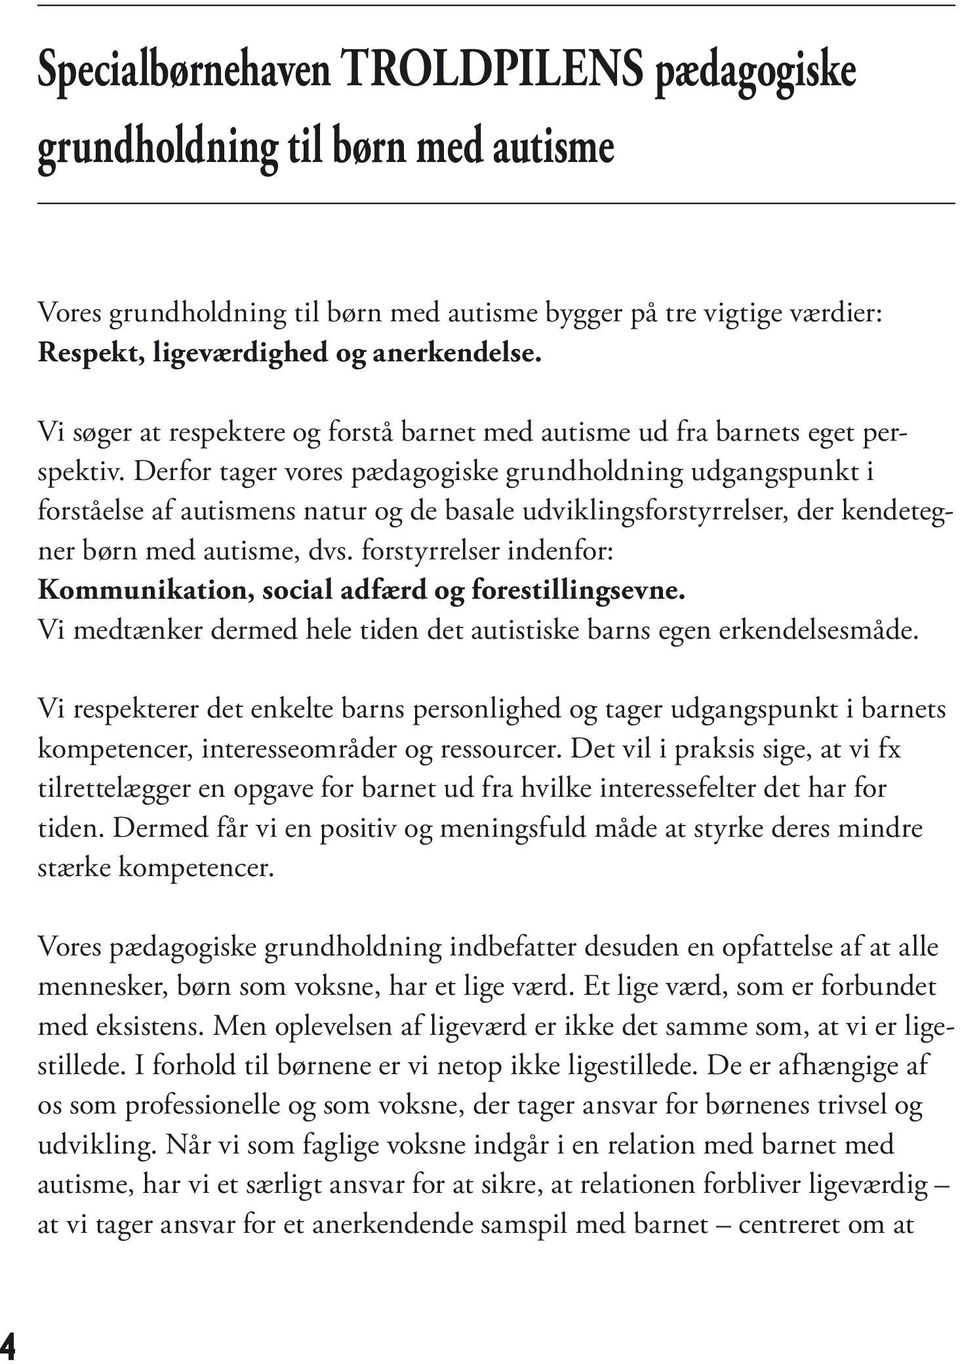 Specialbørnehaven TROLDPILEN S. pædagogiske grundholdning og praksis til  børn med autisme. Rymarksvej Hellerup - PDF Free Download